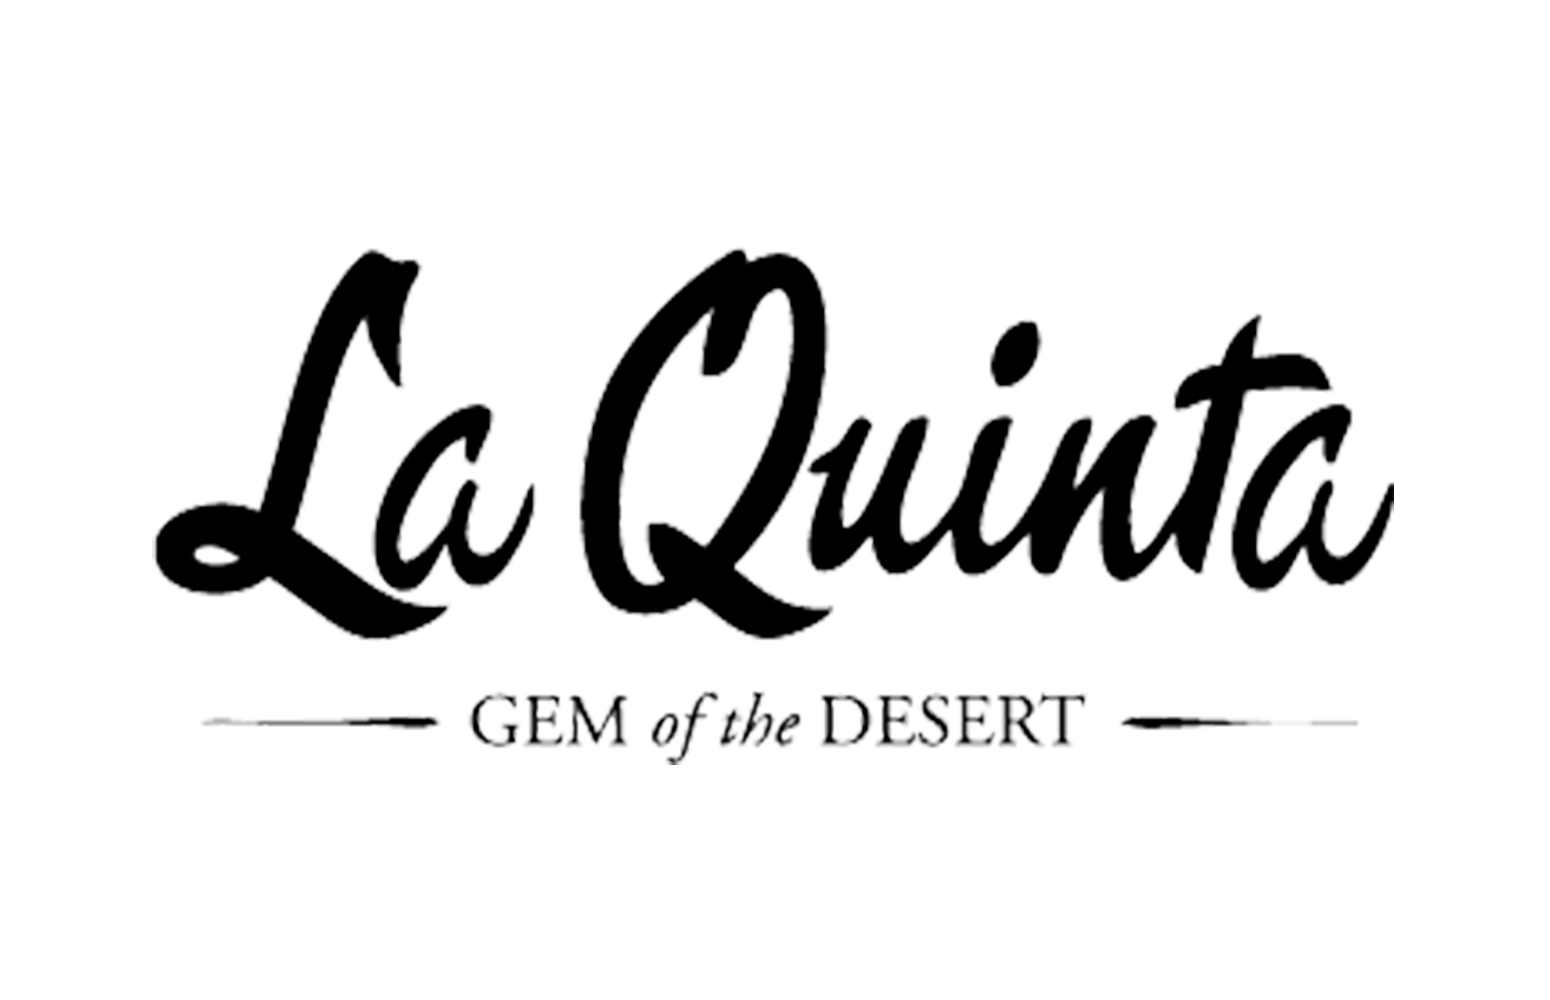 The City of La Quinta